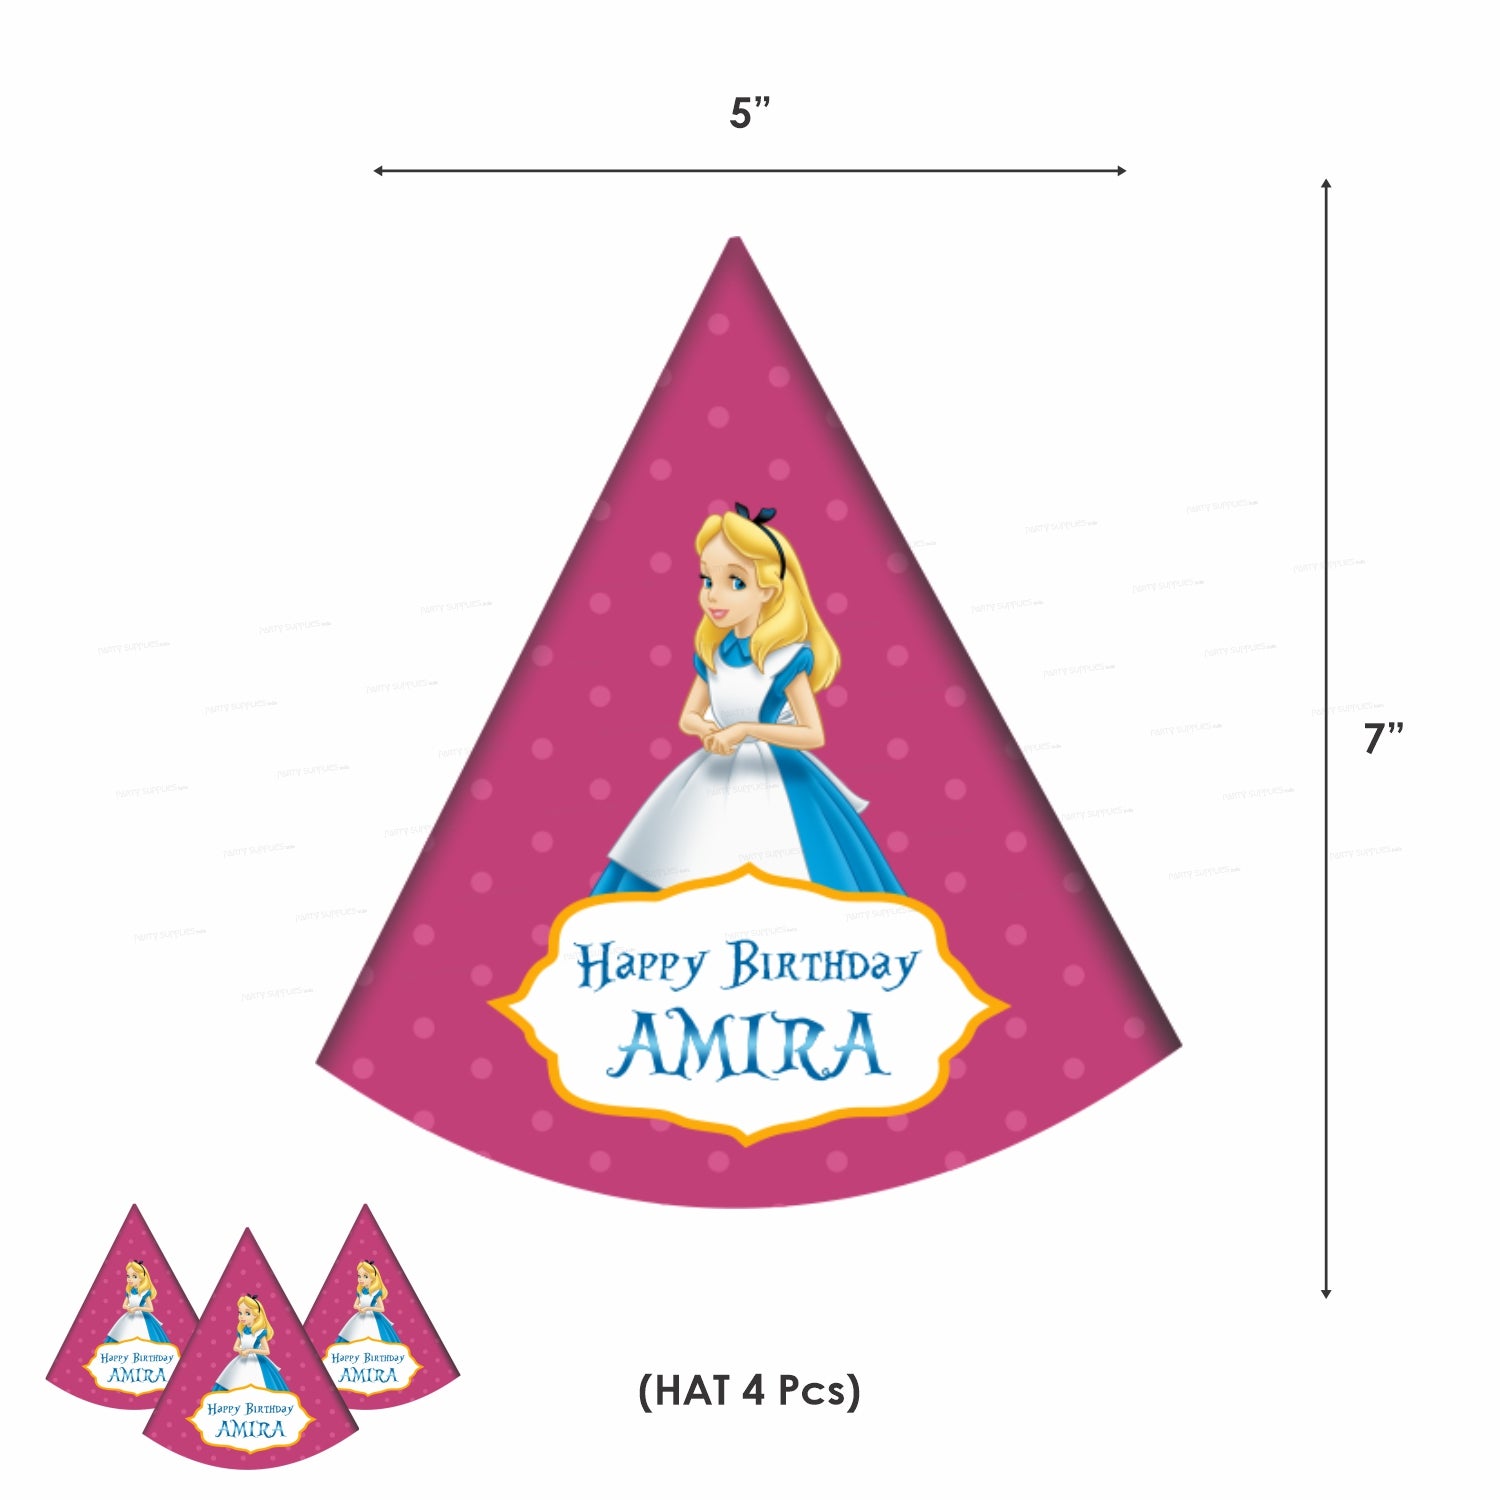 PSI Alice in Wonderland Heritage Theme Kit